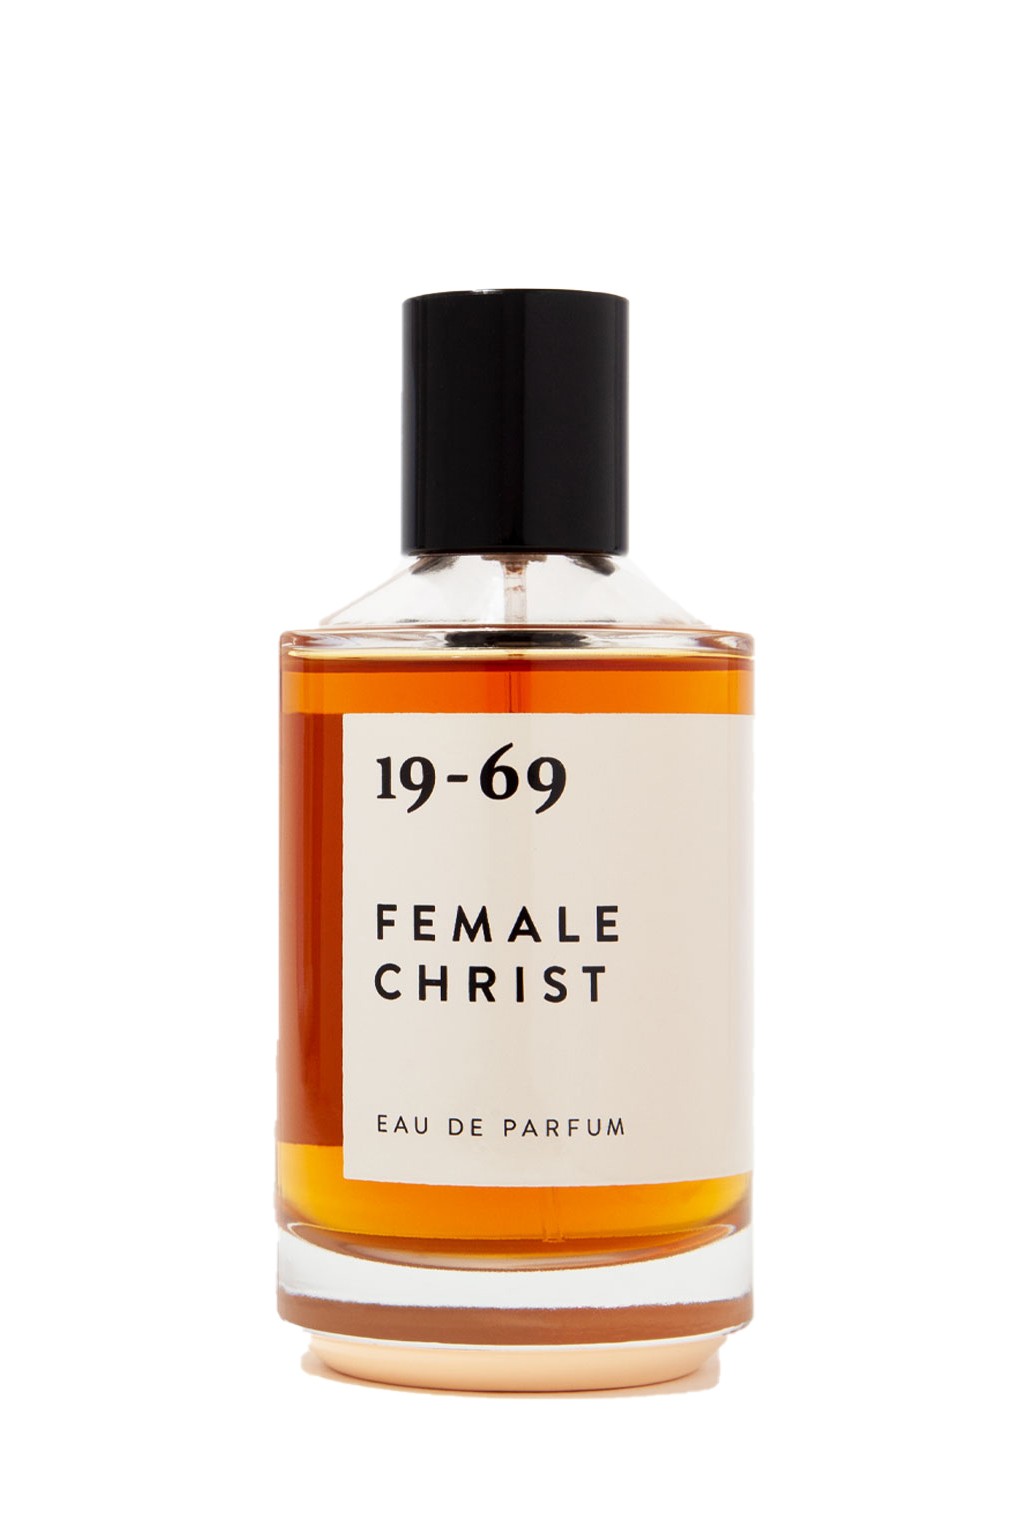 19-69 Female Christ Eau de Parfume 100ml